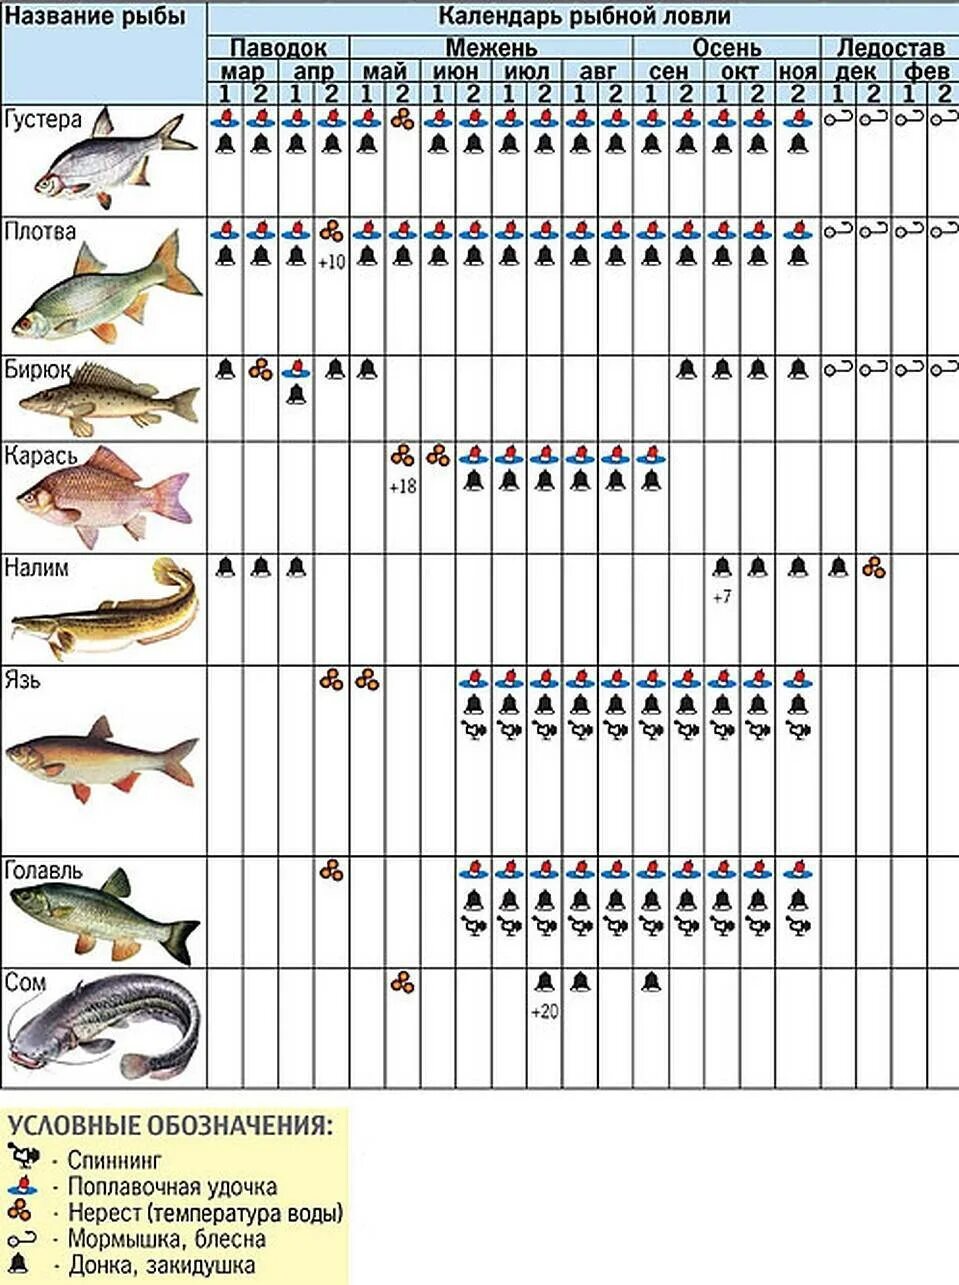 Какую рыбу можно ловить на удочку. Календарь рыбалки. На что можно лов ть рыбу. Календарь рыболова. Календарь ловли рыбы.